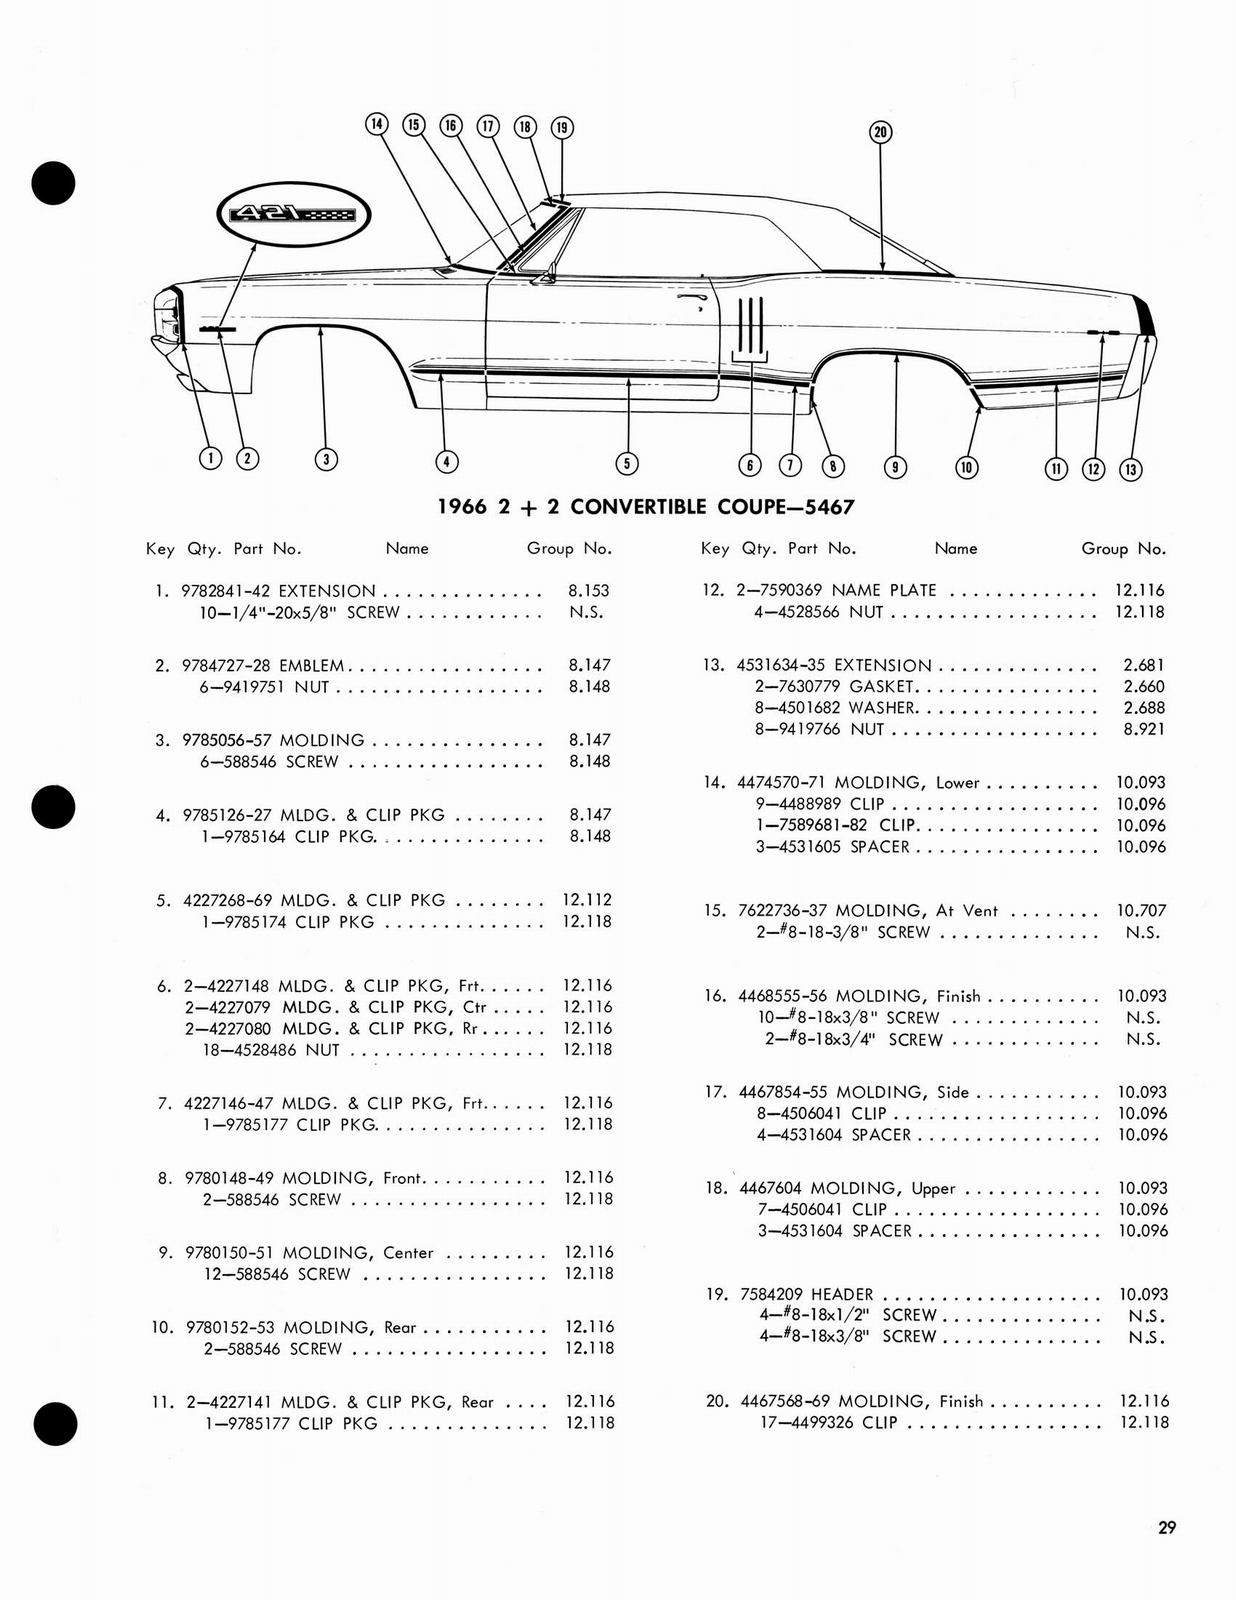 n_1966 Pontiac Molding and Clip Catalog-29.jpg